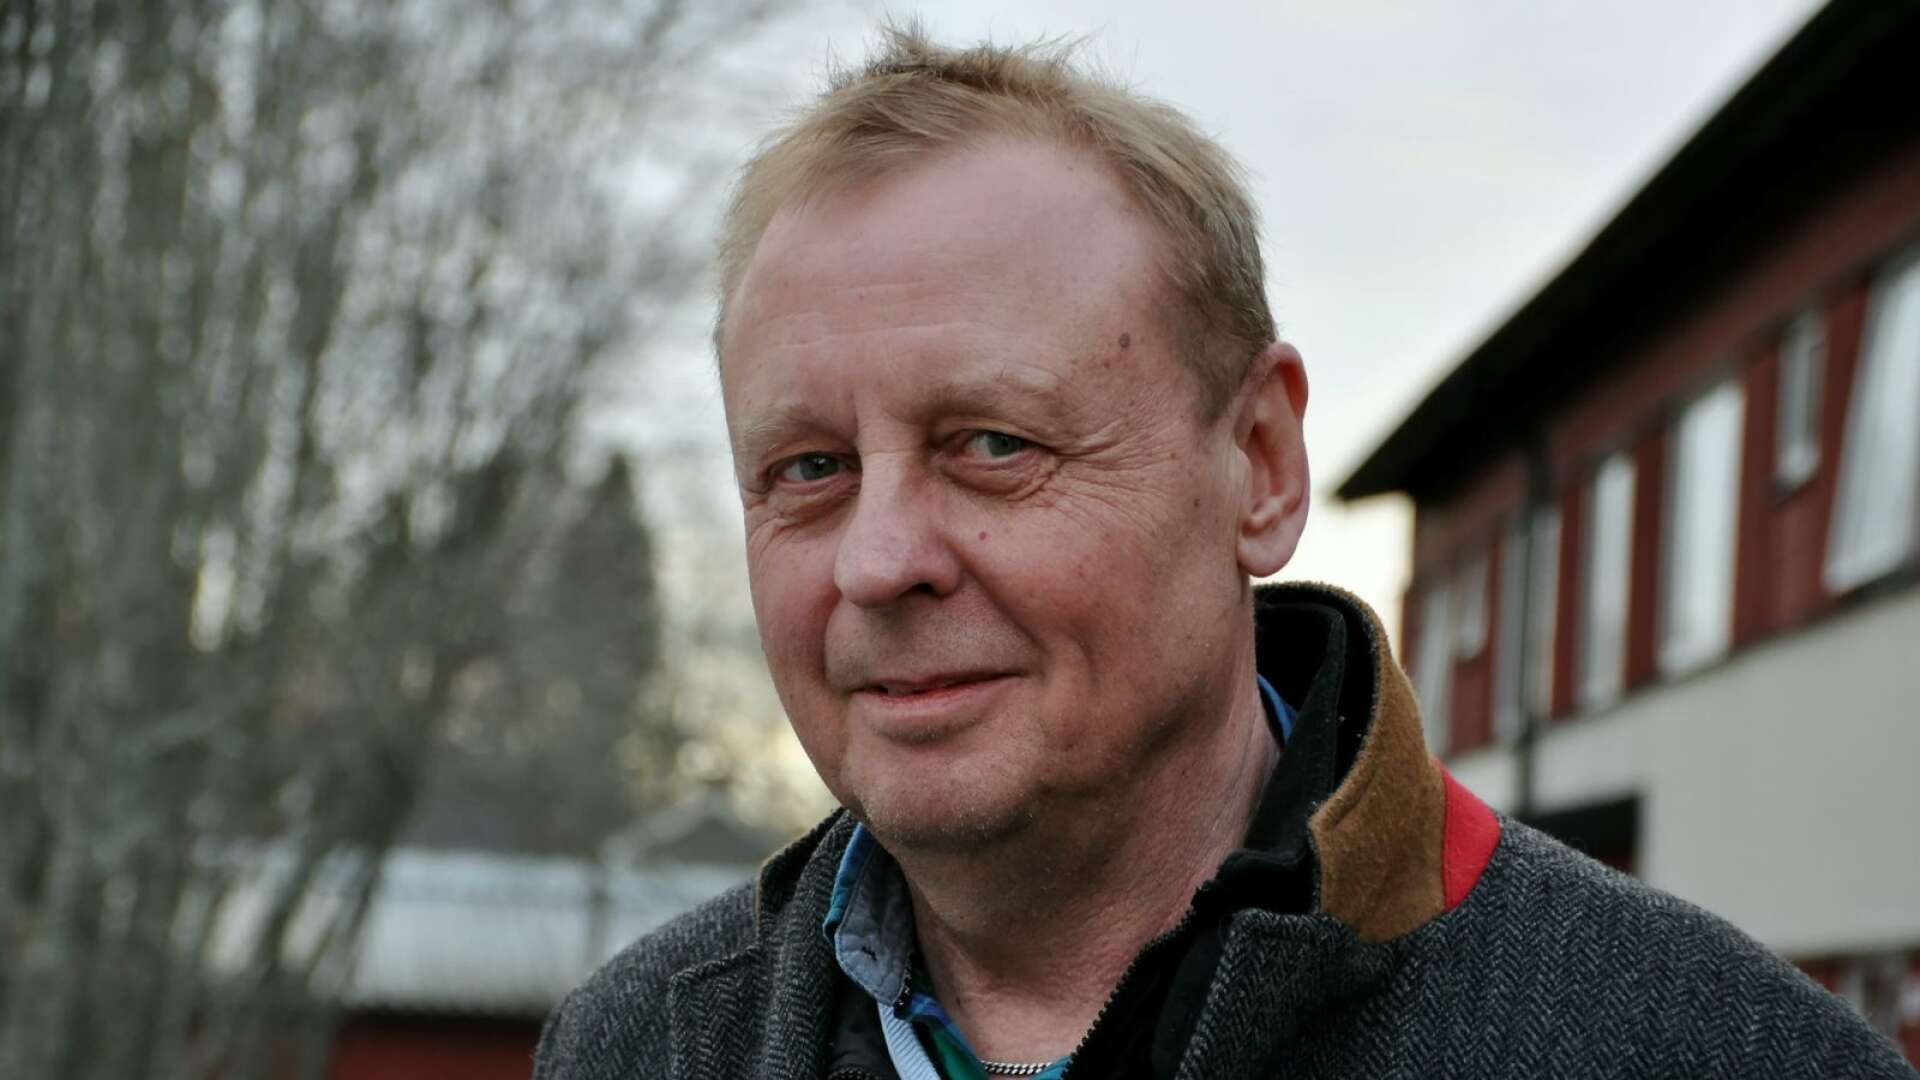 Bengtsforshus sparkade vd Pär Nilsson polisanmäler nu Bengtsfors kommun för förtal./ARKIVBILD